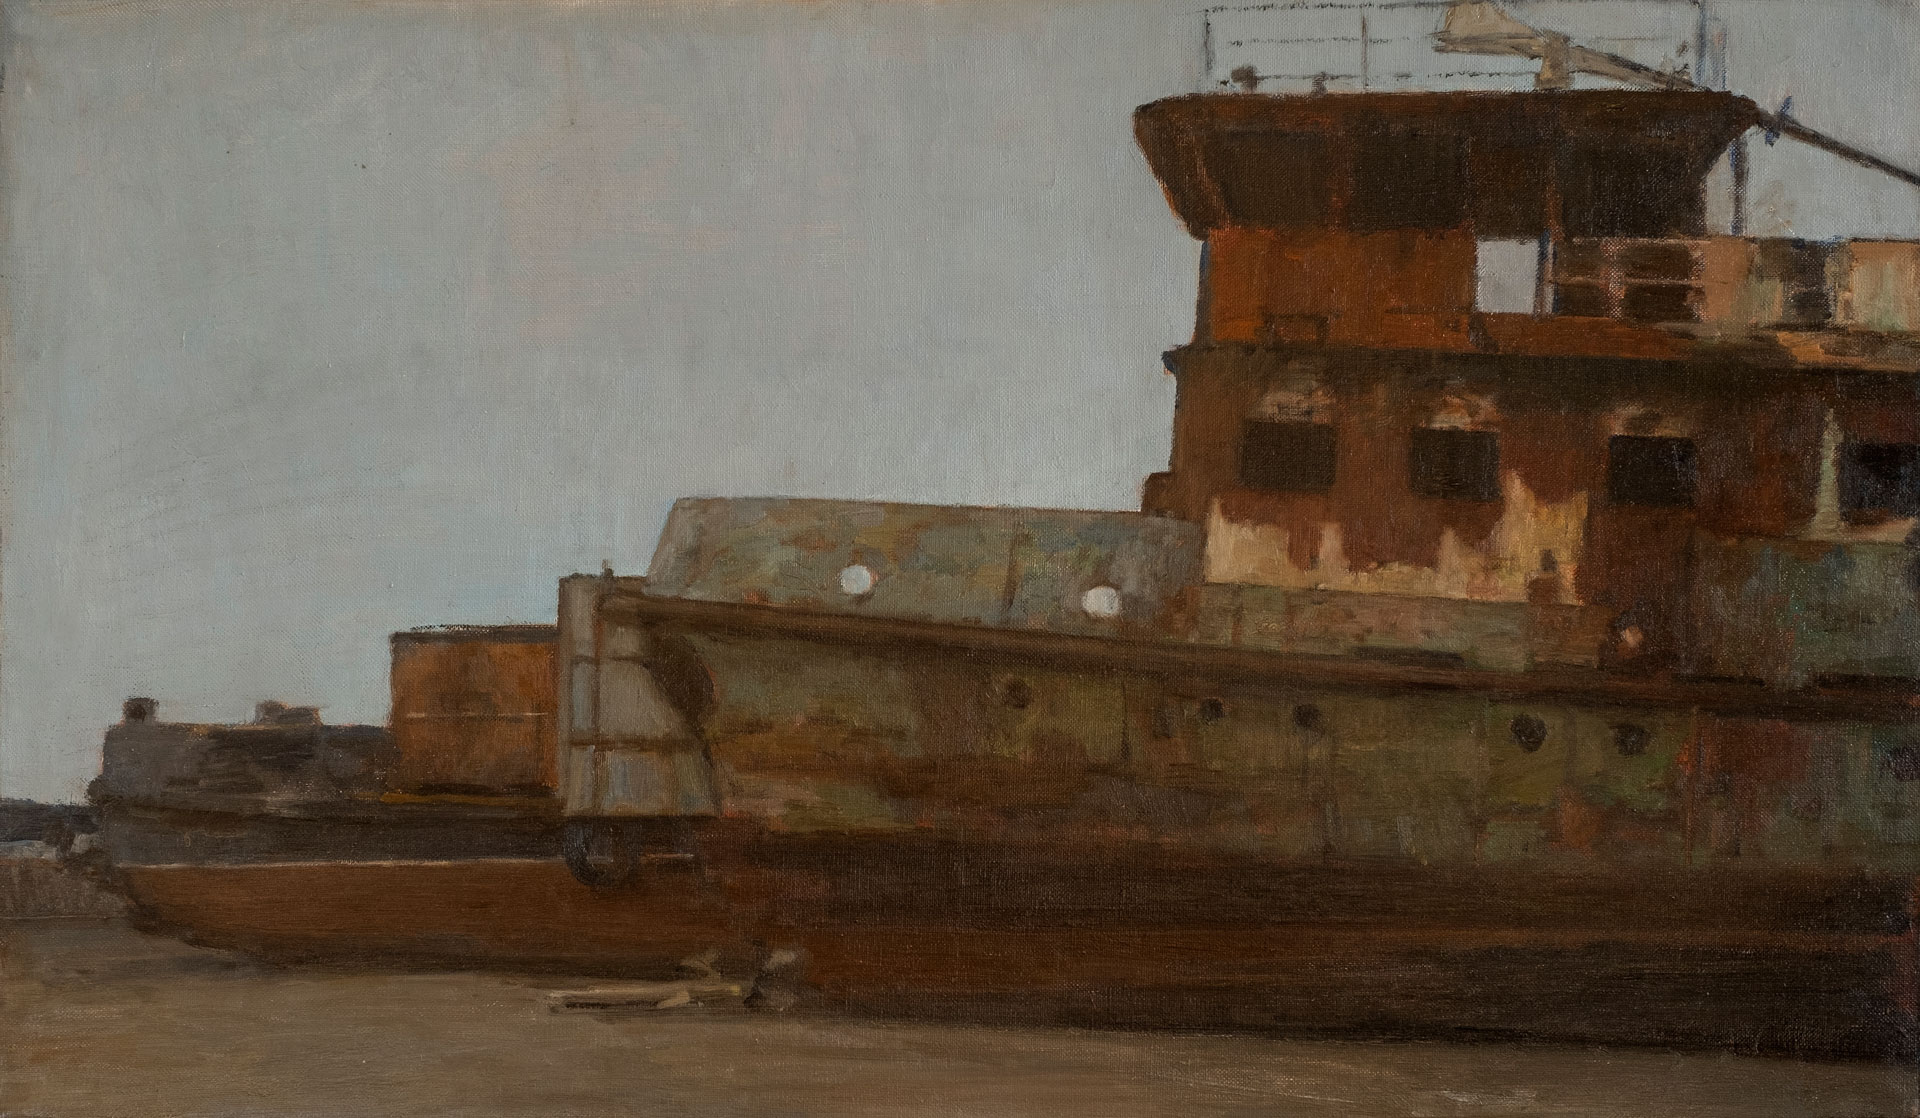 Before Winter - 1, Maksim Kaetkin, Buy the painting Oil